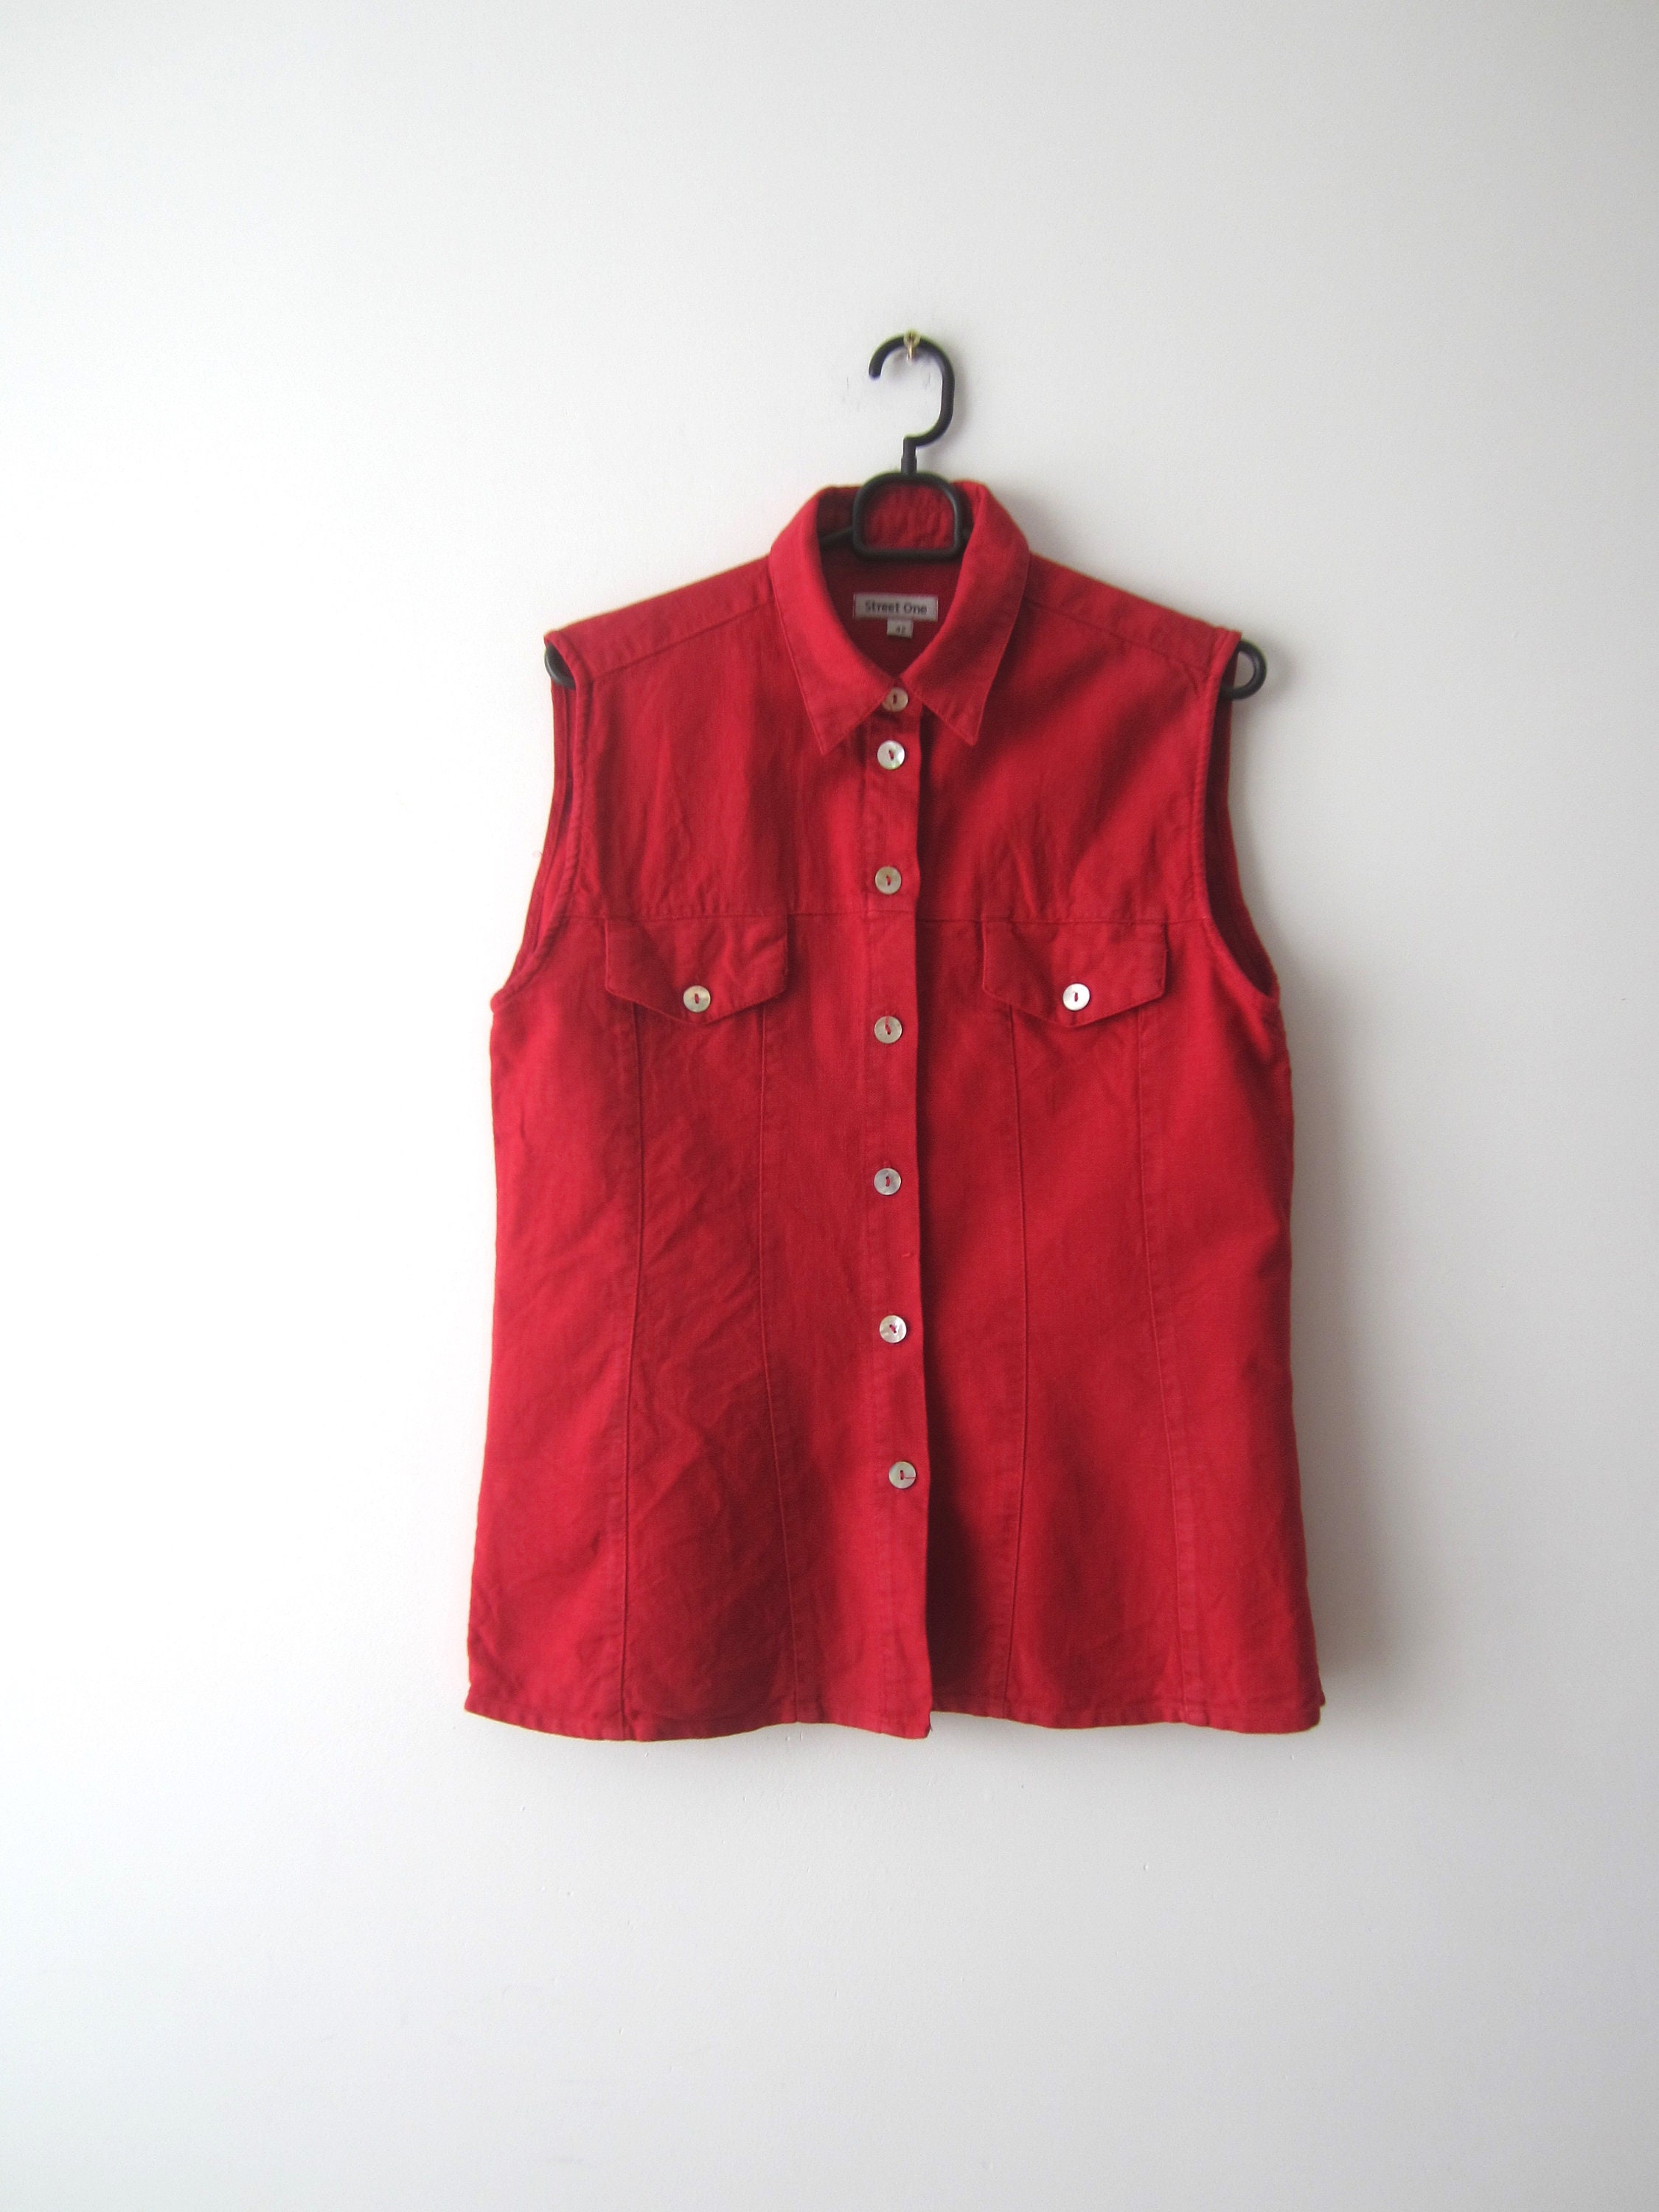 Vintage Red Linen Blend Cotton Vest Women's Shirt Comfortable Ranch Waistcoat Size Large